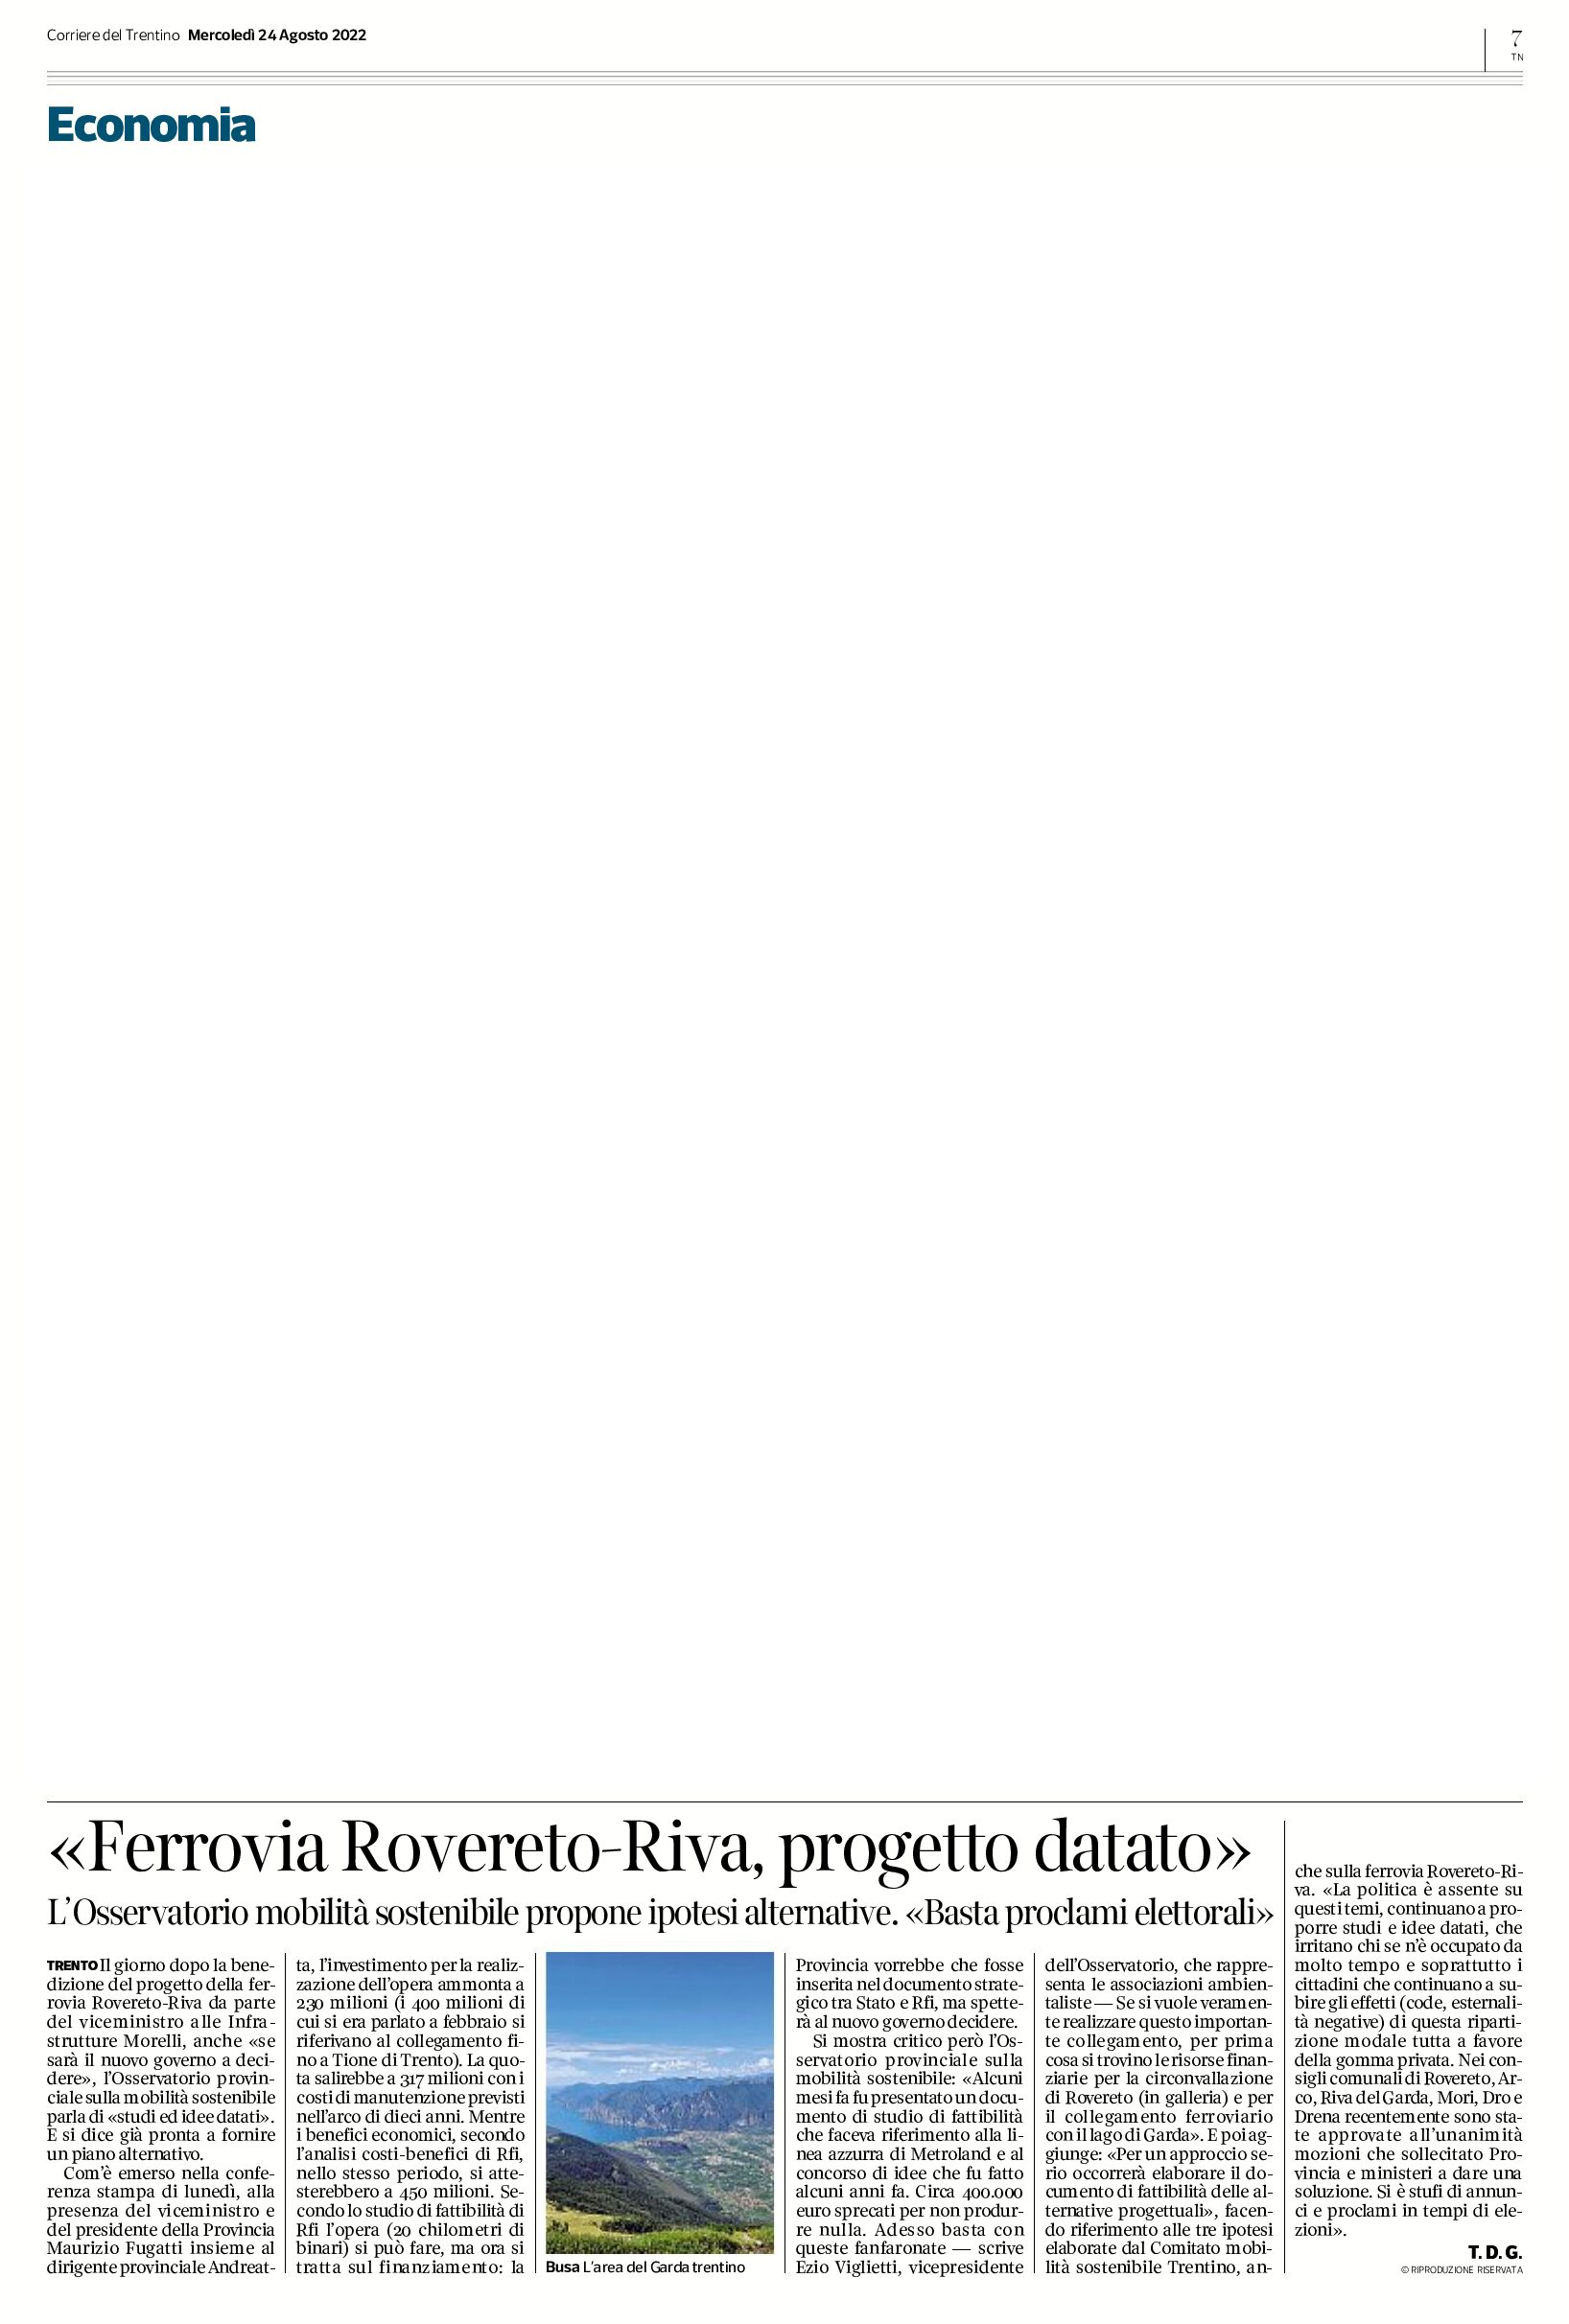 Ferrovia Rovereto-Riva: progetto datato. L’Osservatorio mobilità sostenibile propone ipotesi alternative